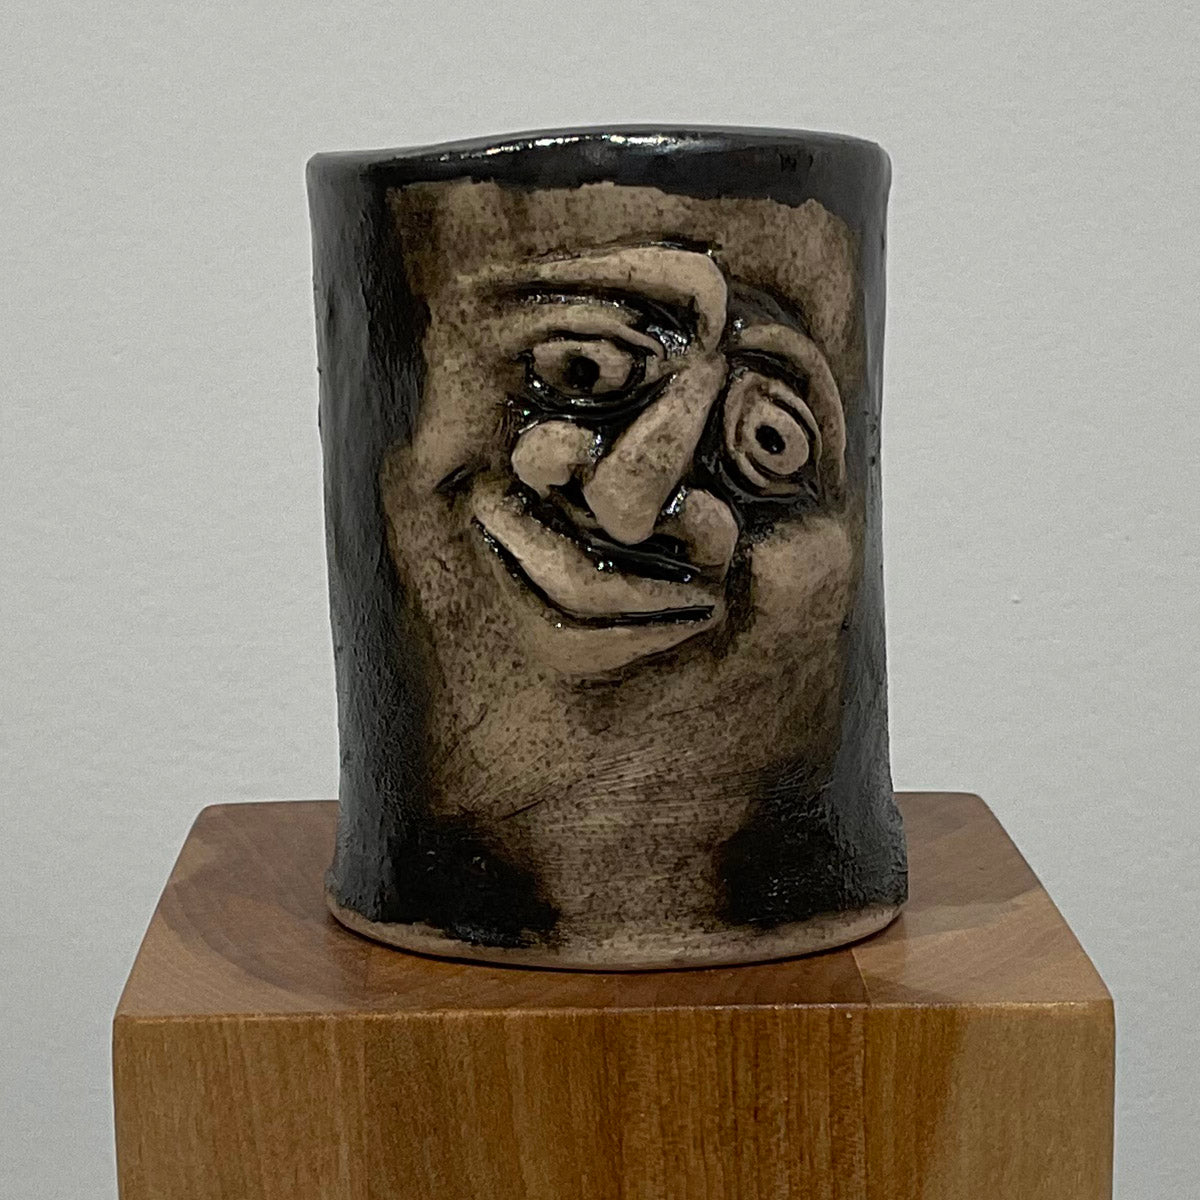 Mug Shot, RUSTY No. 23, ceramic